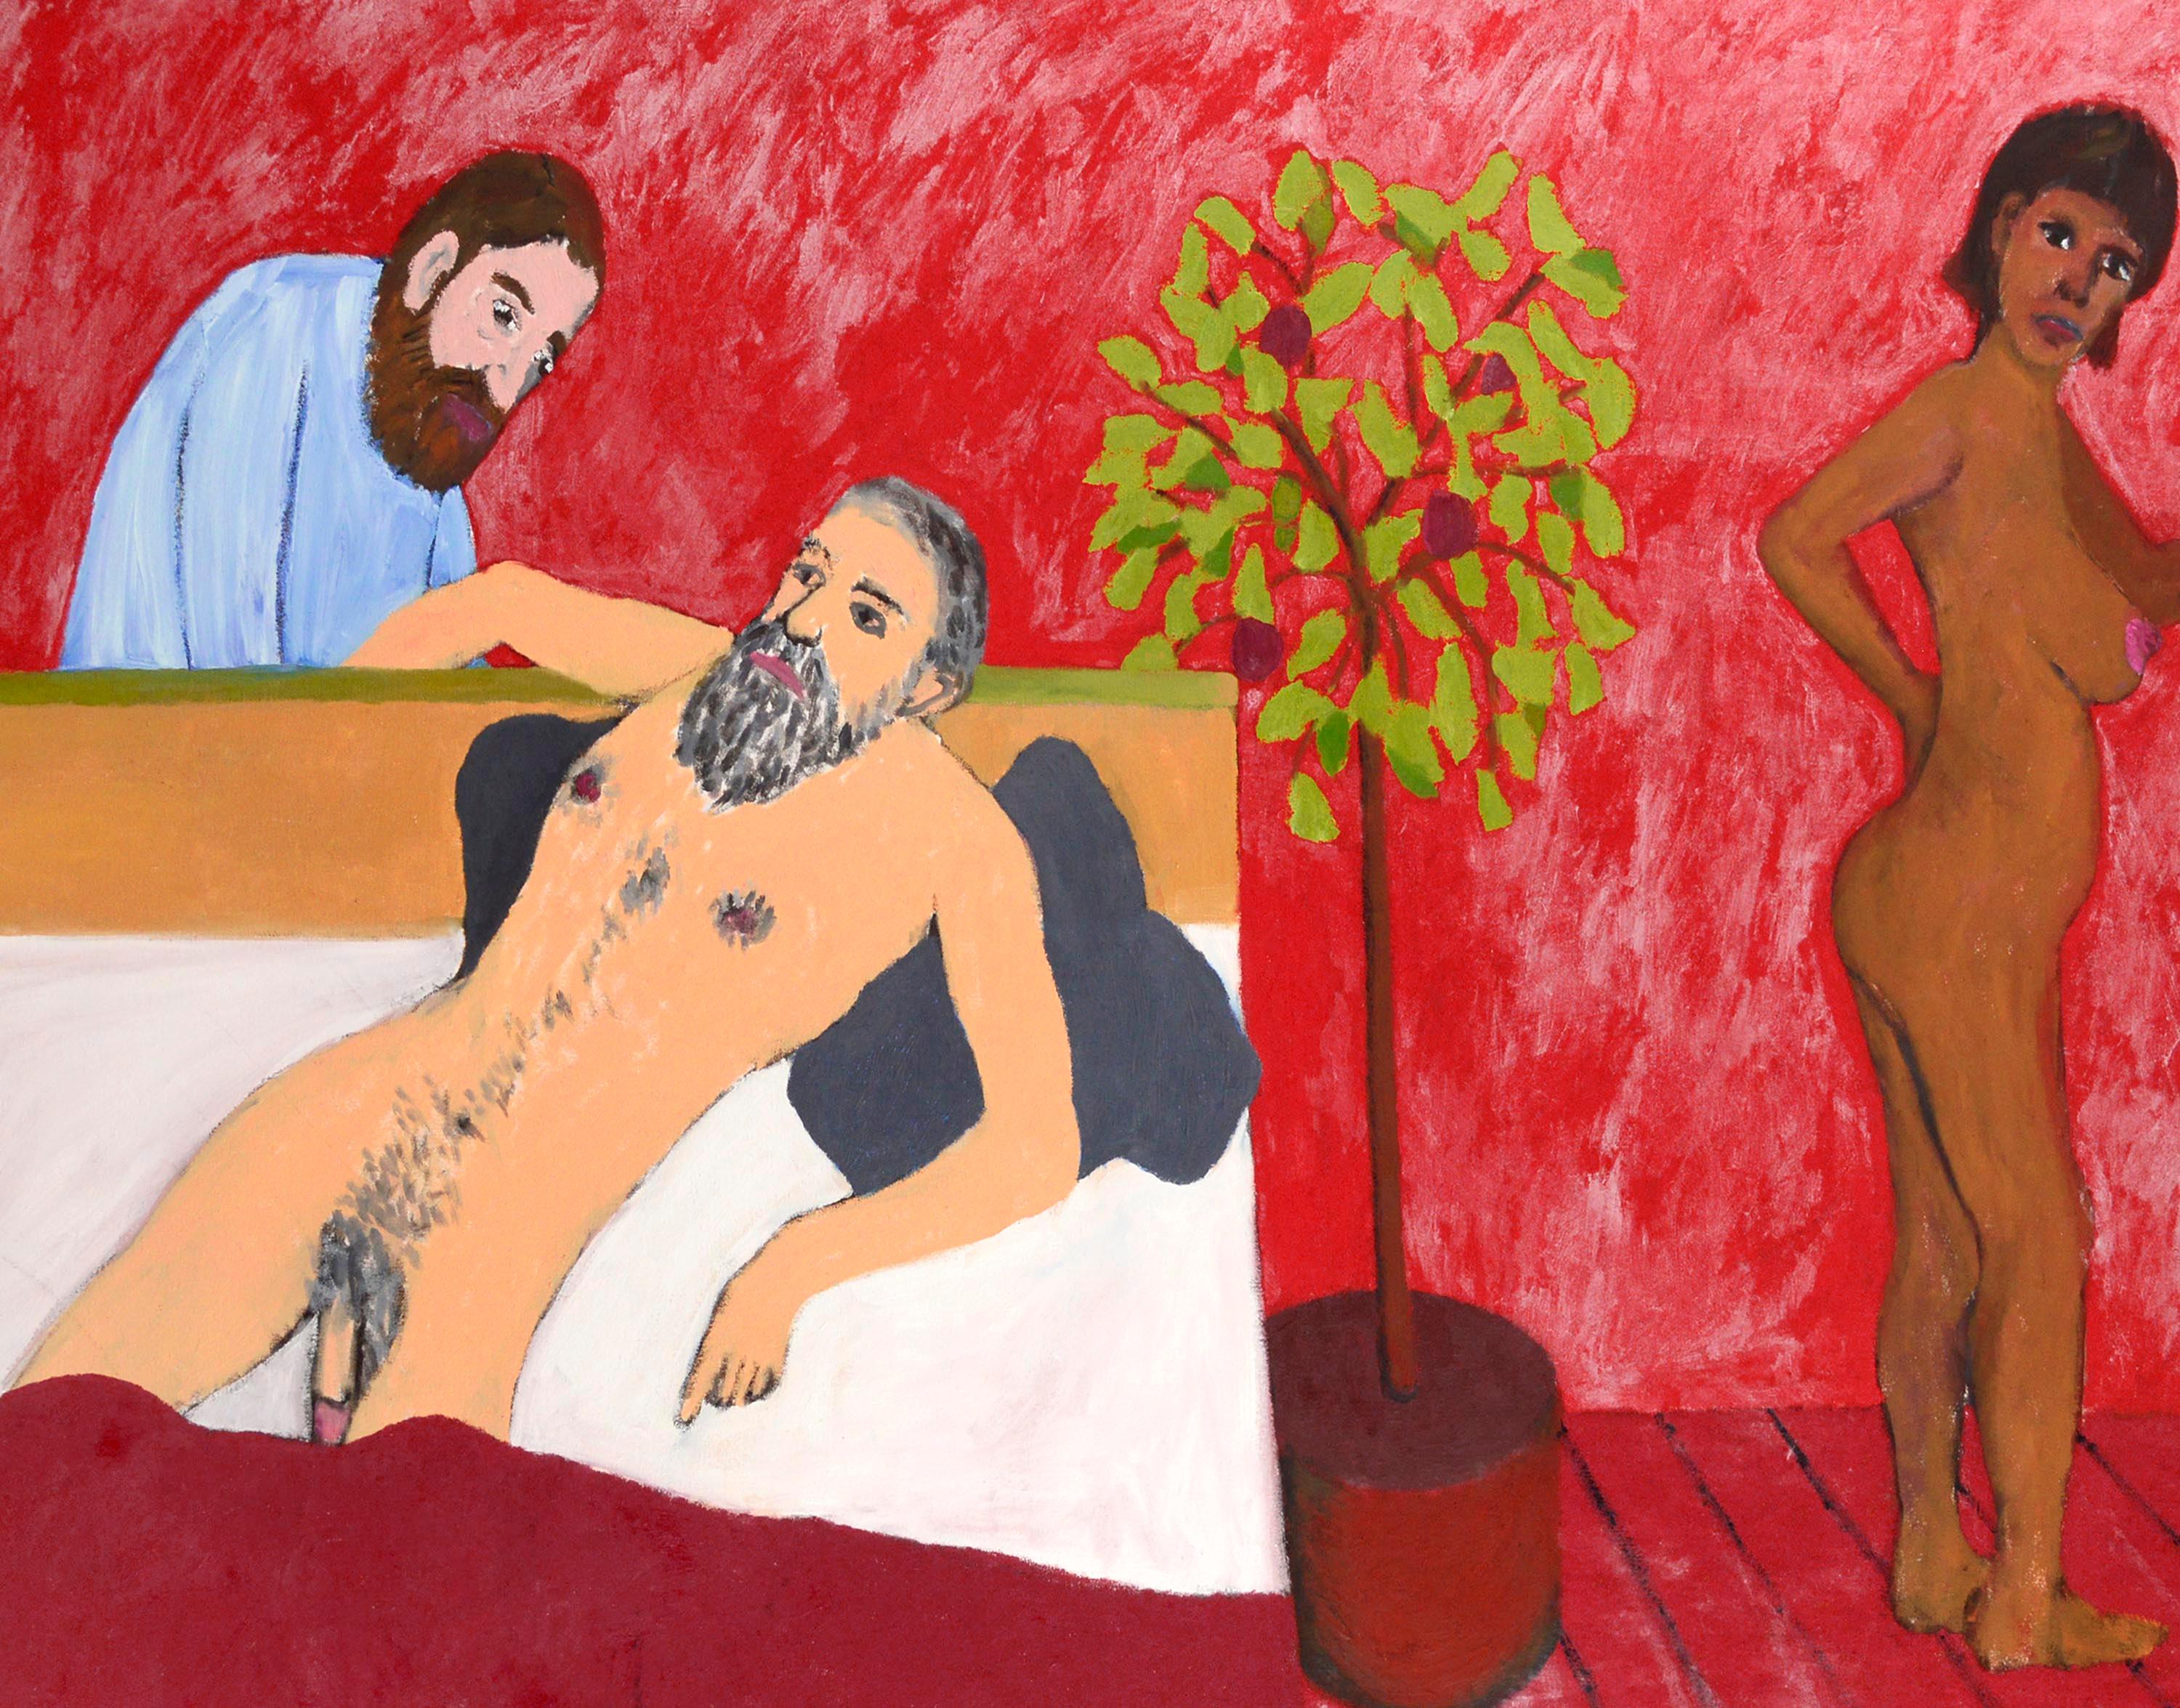 Nu couché et arbre couché, scène d'intérieur figurative contemporaine dans une pièce rouge - Painting de Michael Pauker 